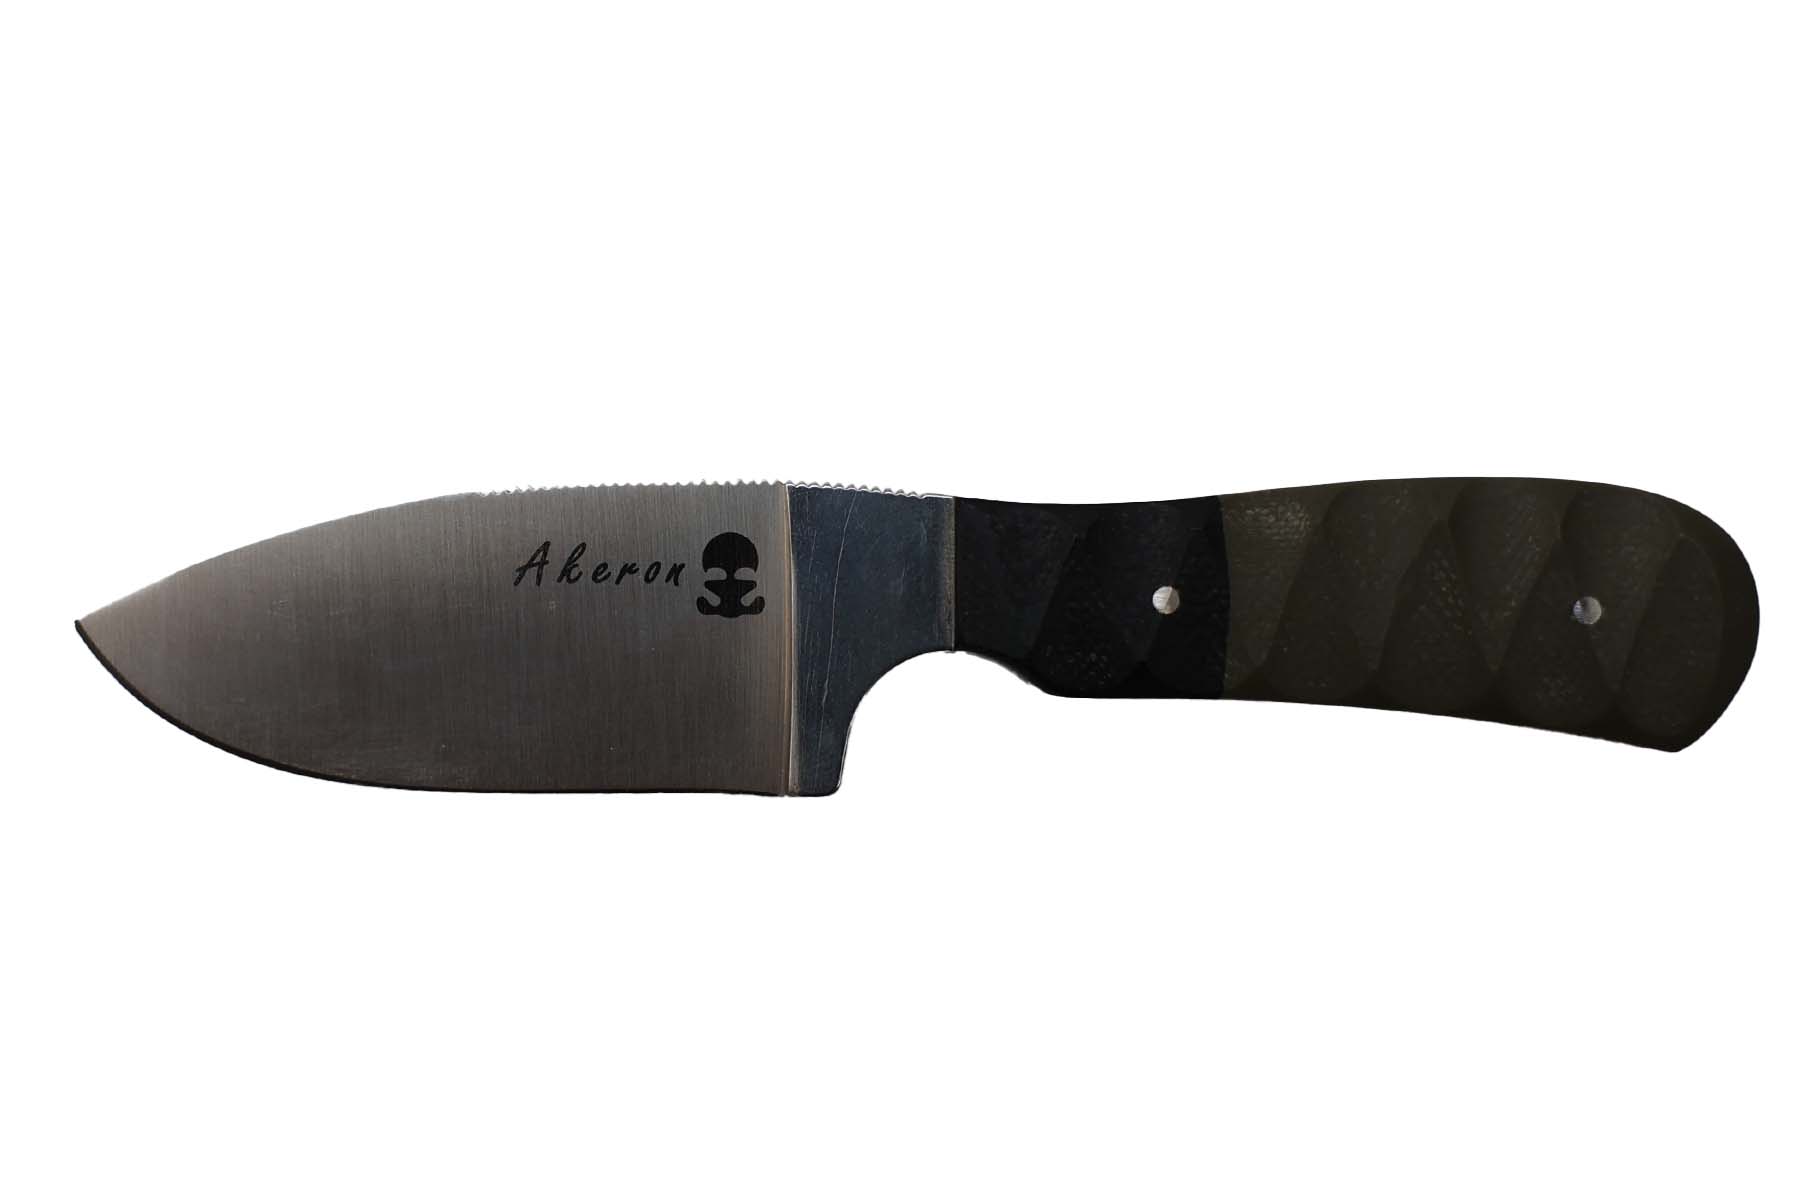 Couteau fixe de Fred Perrin et Akeron Mini Randonneur G10 mixte